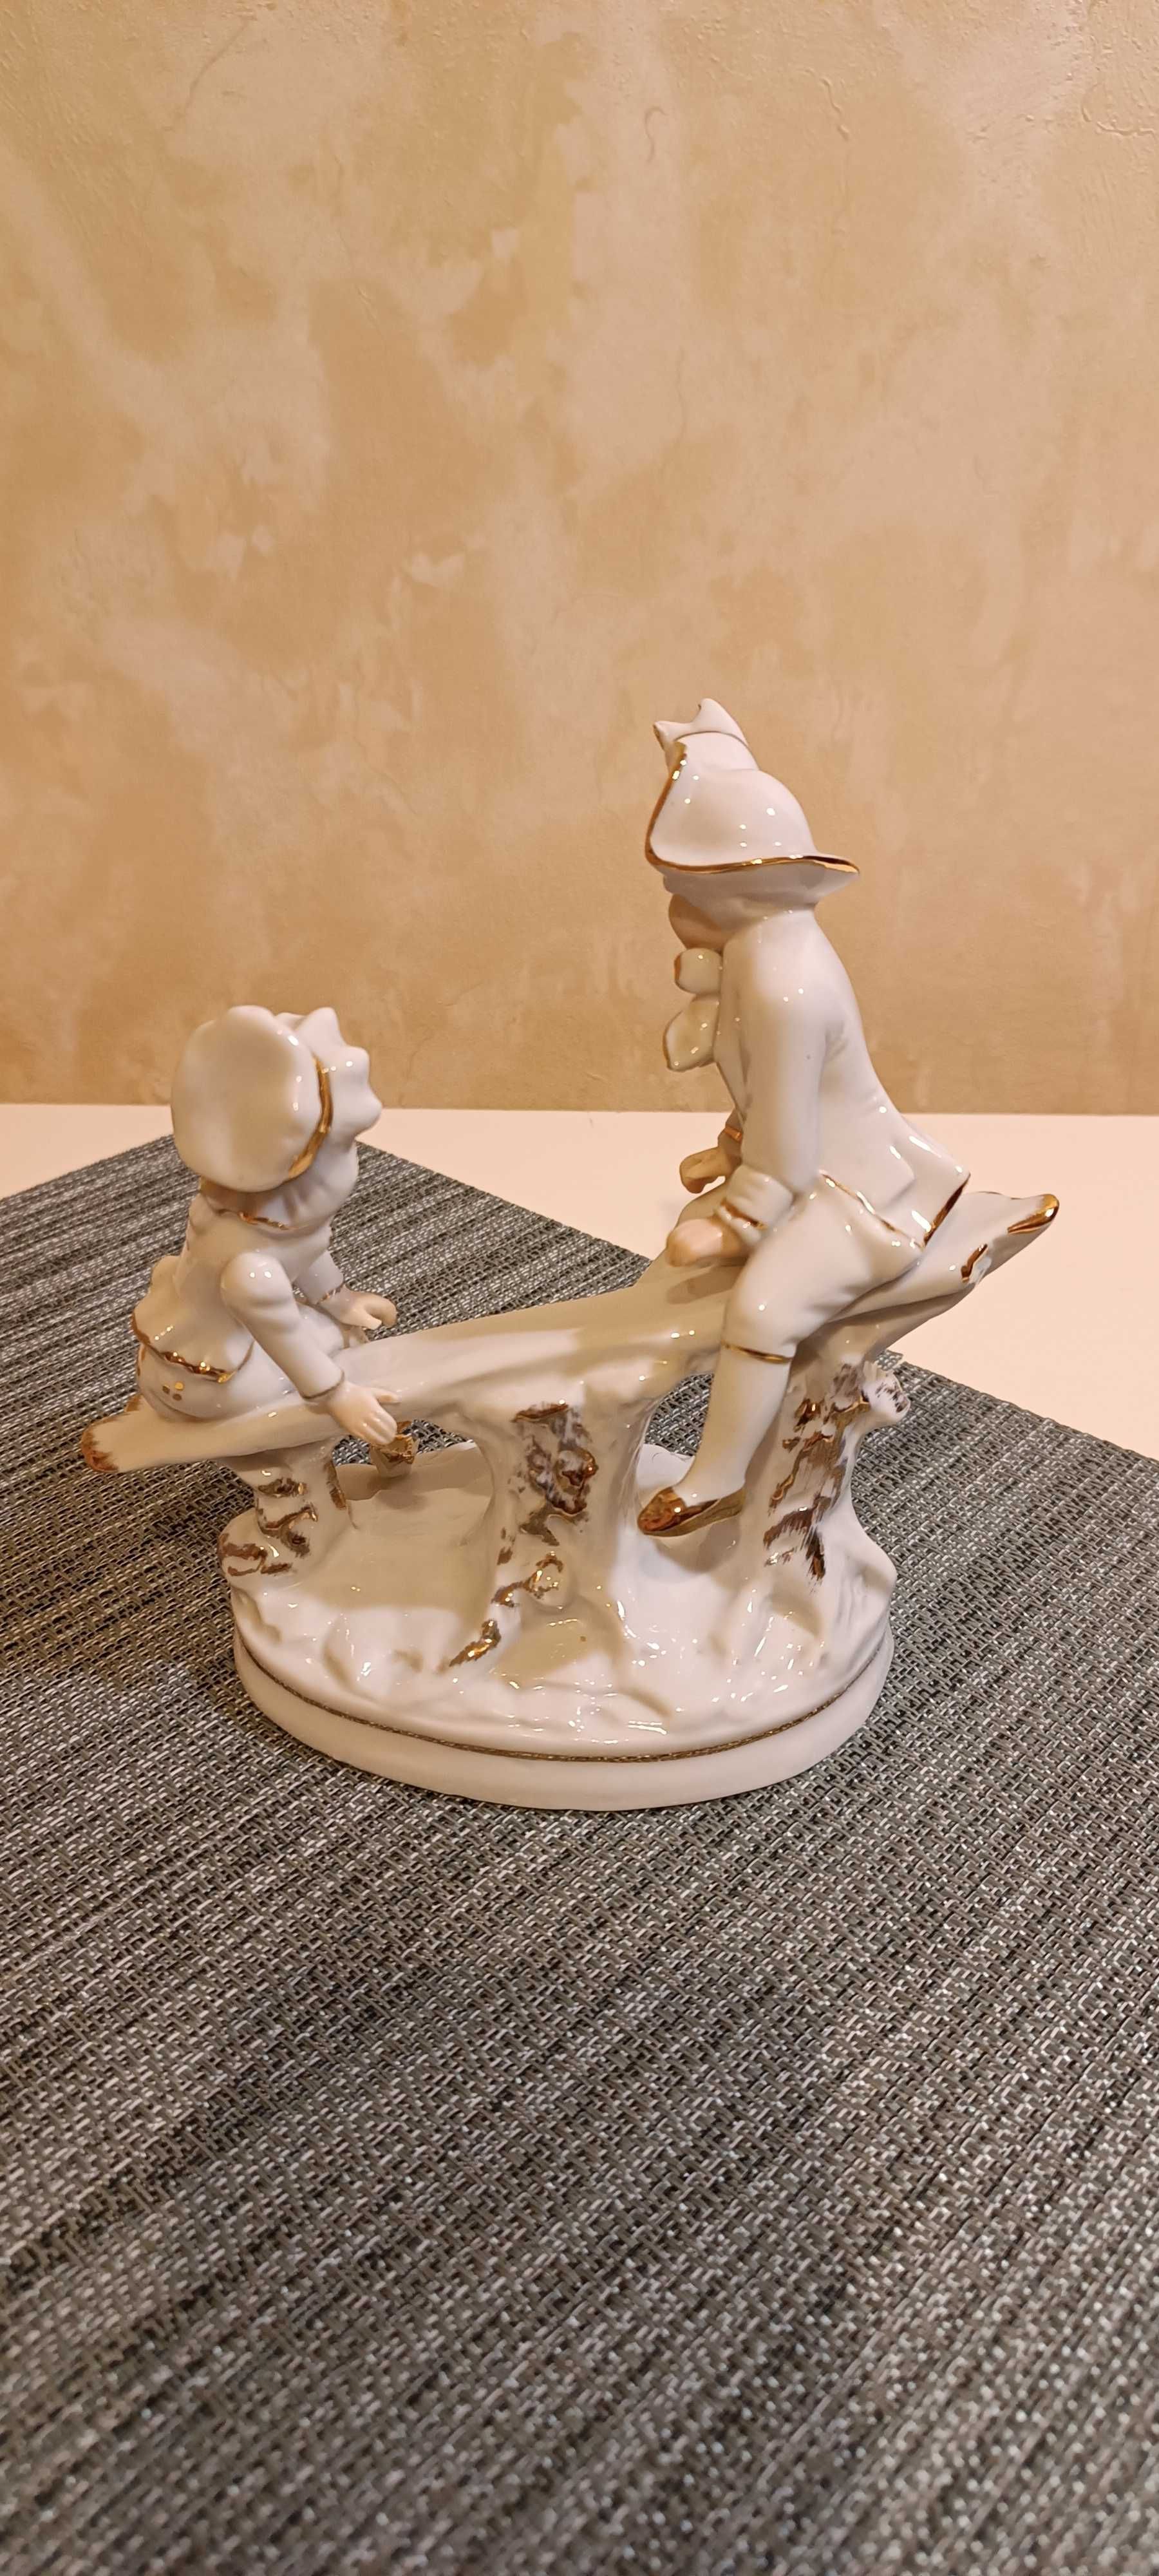 Porcelanowa figurka dzieci siedzących na huśtawce